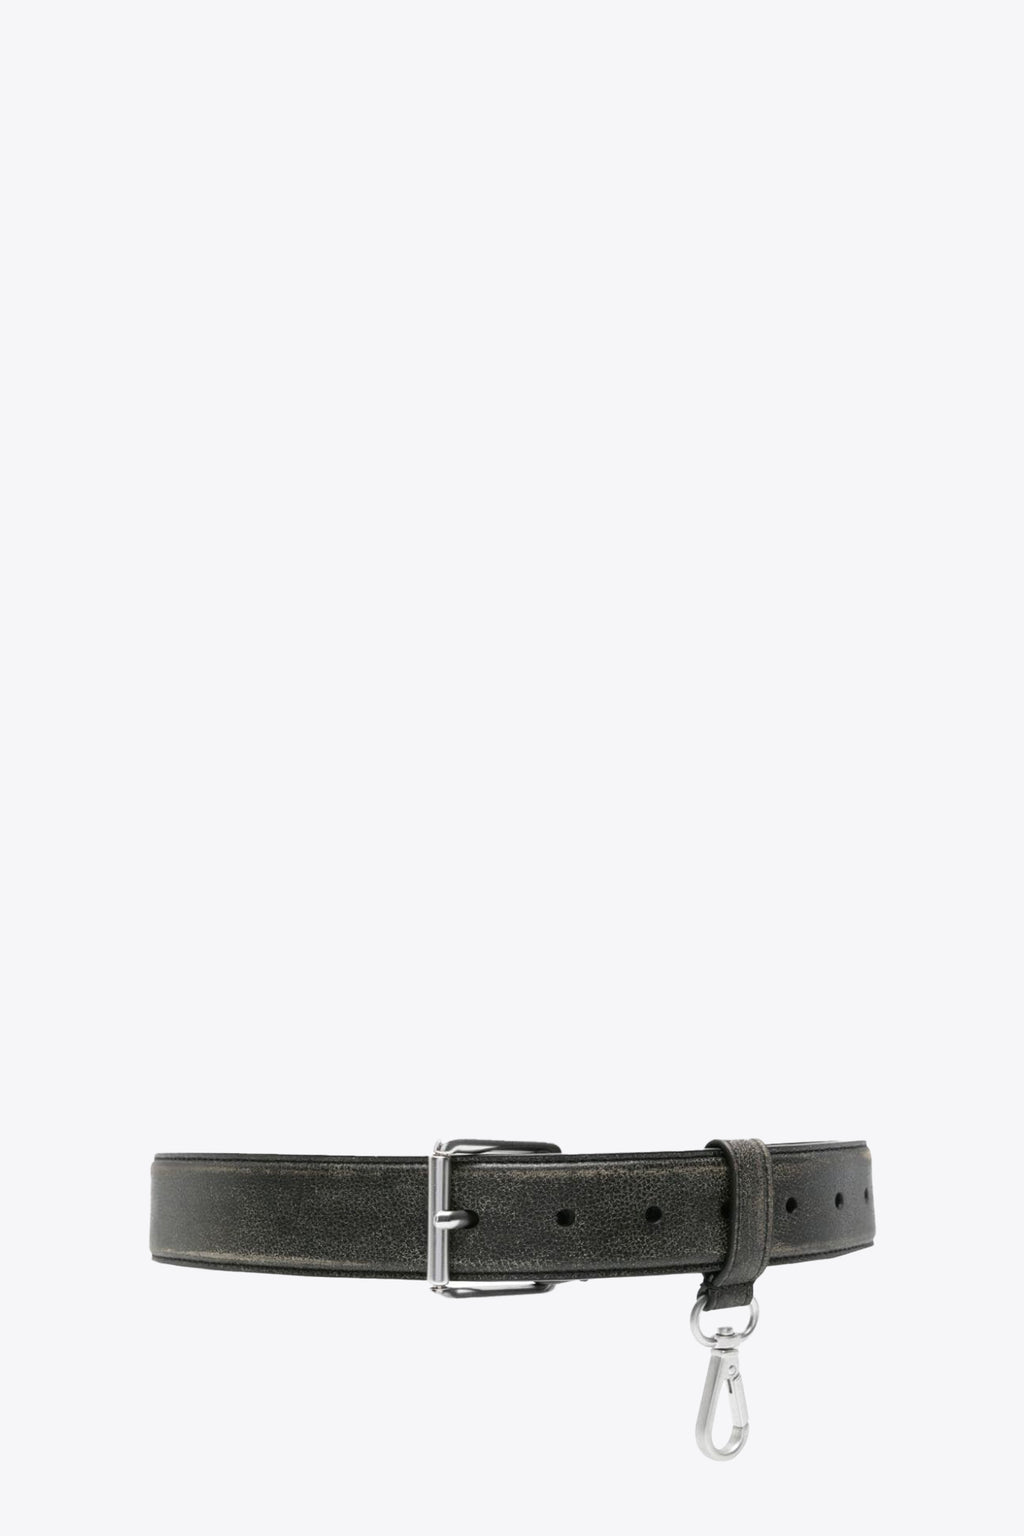 alt-image__Distressed-black-leather-belt-with-snap-hook